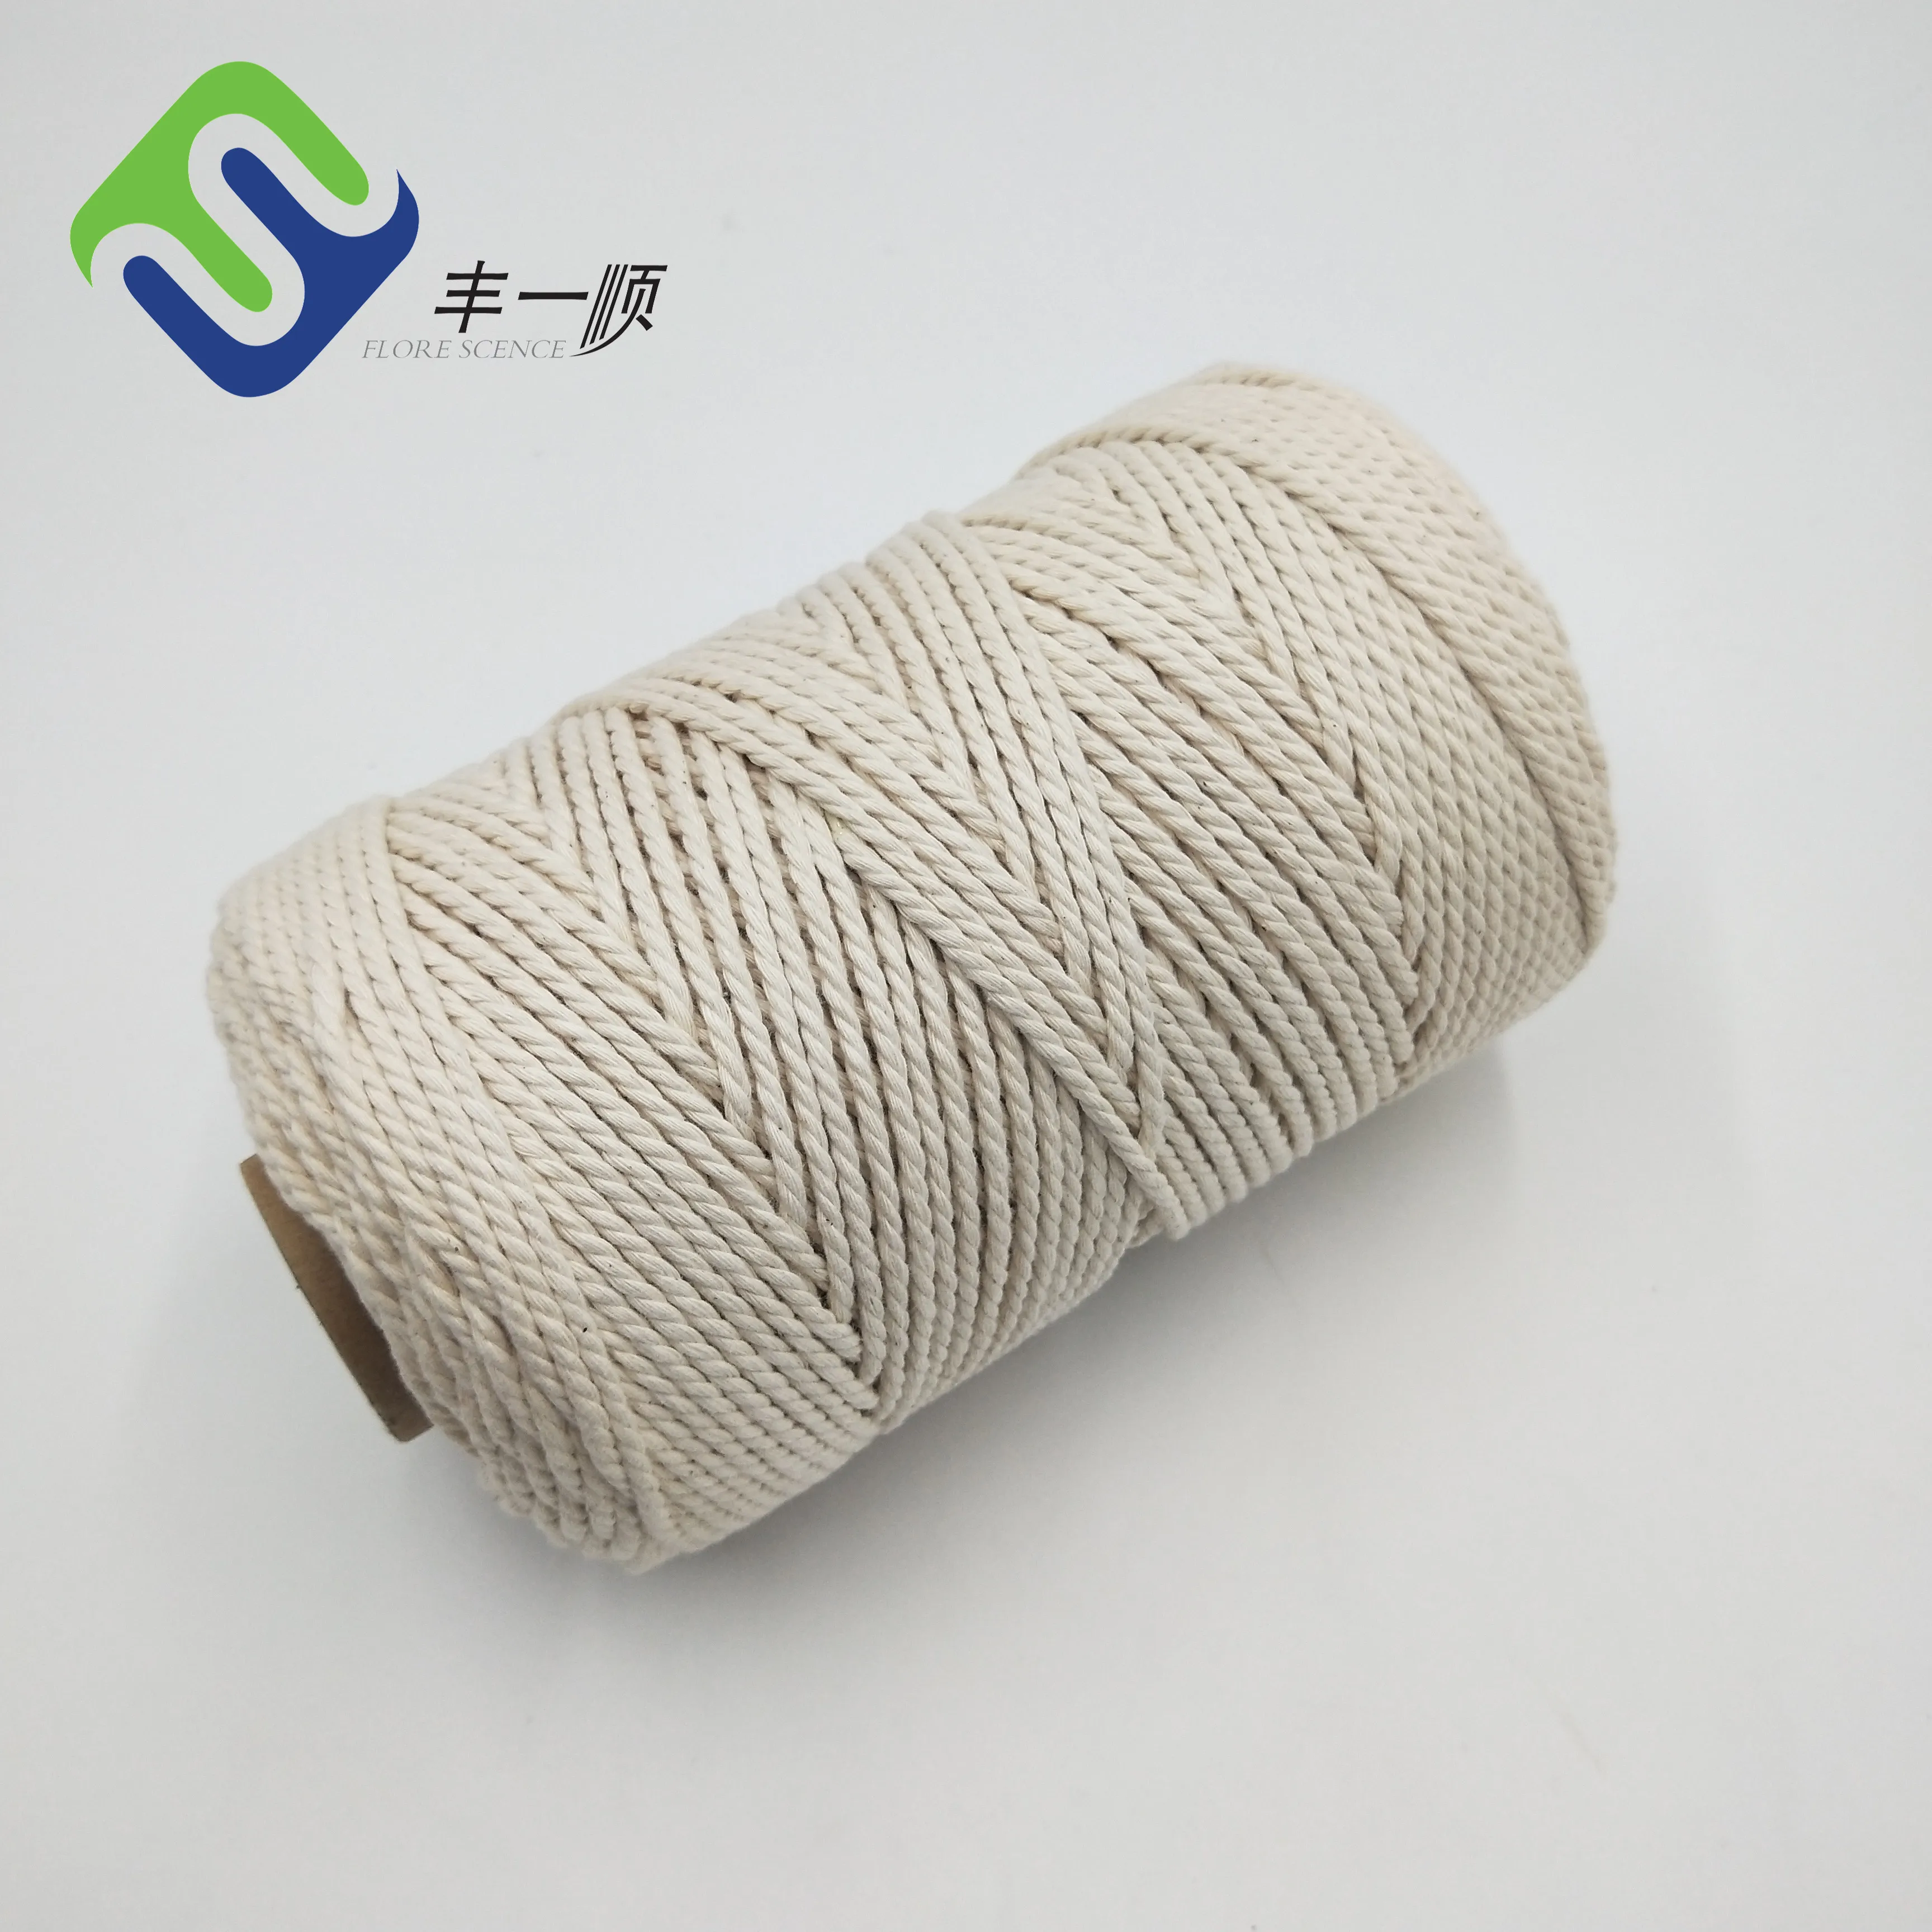 ຂາຍສົ່ງສາຍເຊືອກປະດັບຫ້ອຍ 3mm macrame cord cotton rope 3mmX220yards